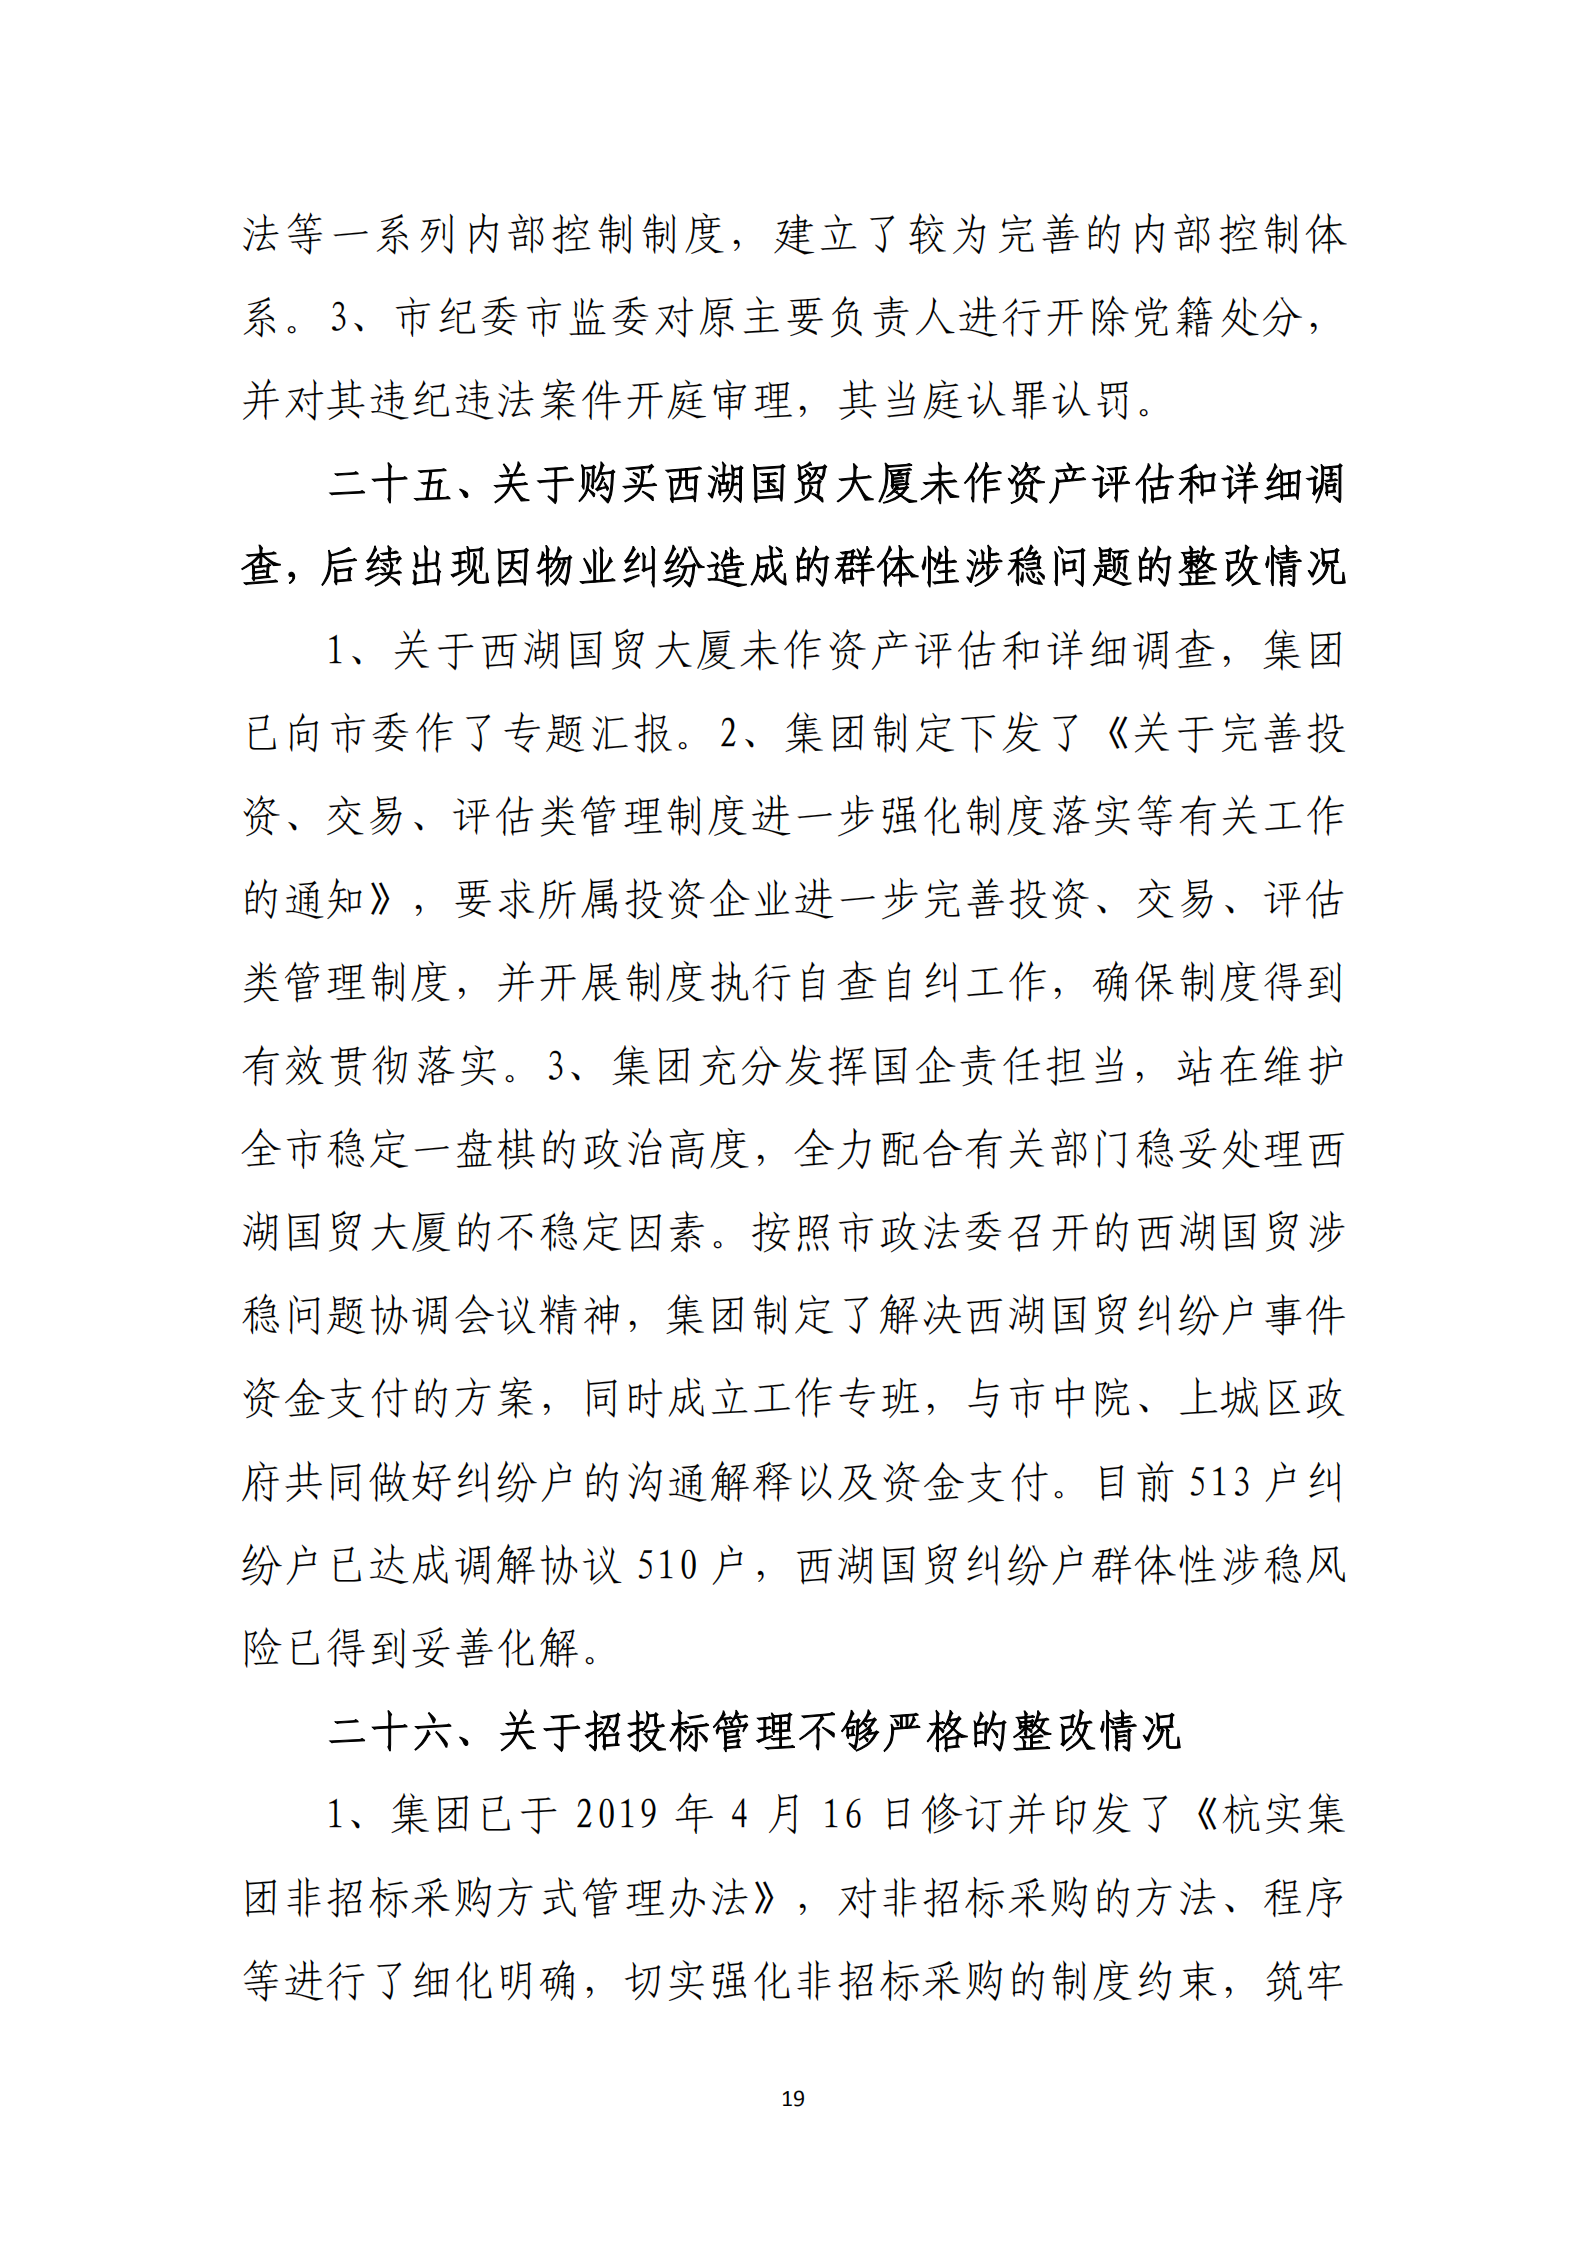 【体育365官方网站】中国有限公司党委关于巡察整改情况的通报_18.png